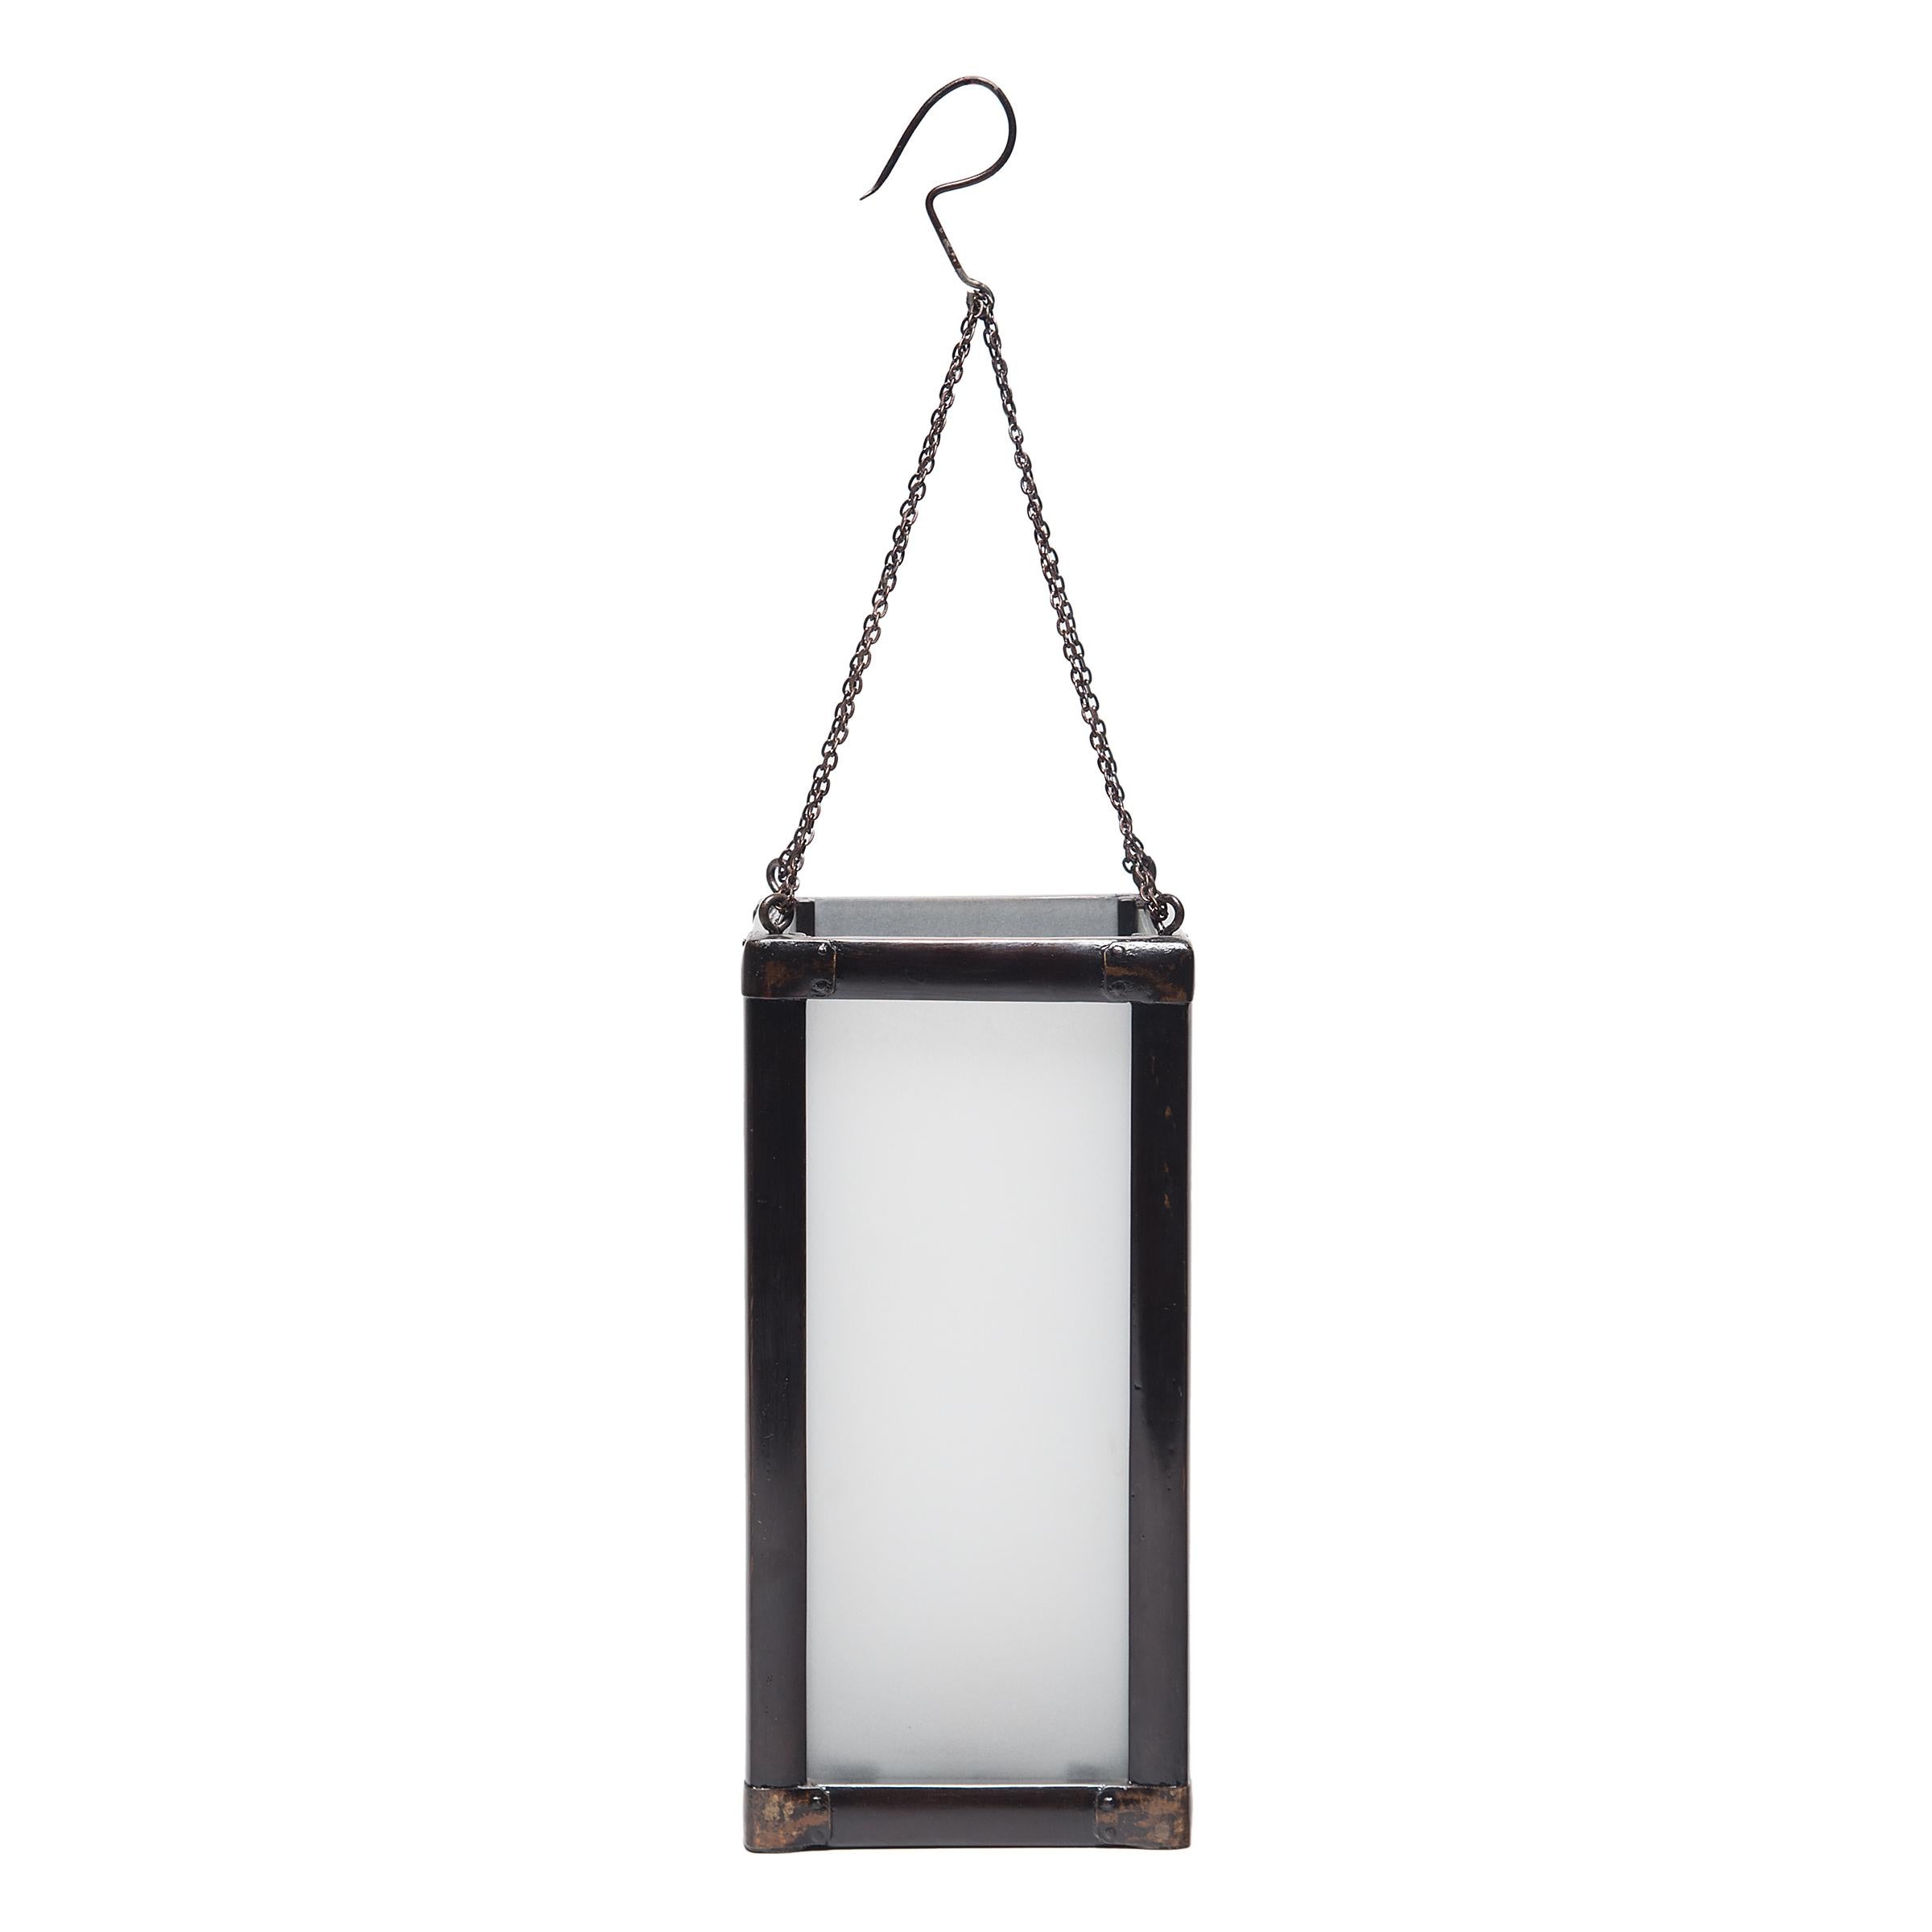 Encadrée en bois noir, cette lanterne carrée du XIXe siècle diffuse une douce lumière à travers le verre dépoli. Affichant la simplicité raffinée que l'on retrouve dans les meubles de la même époque, la lanterne illumine les intérieurs modernes avec